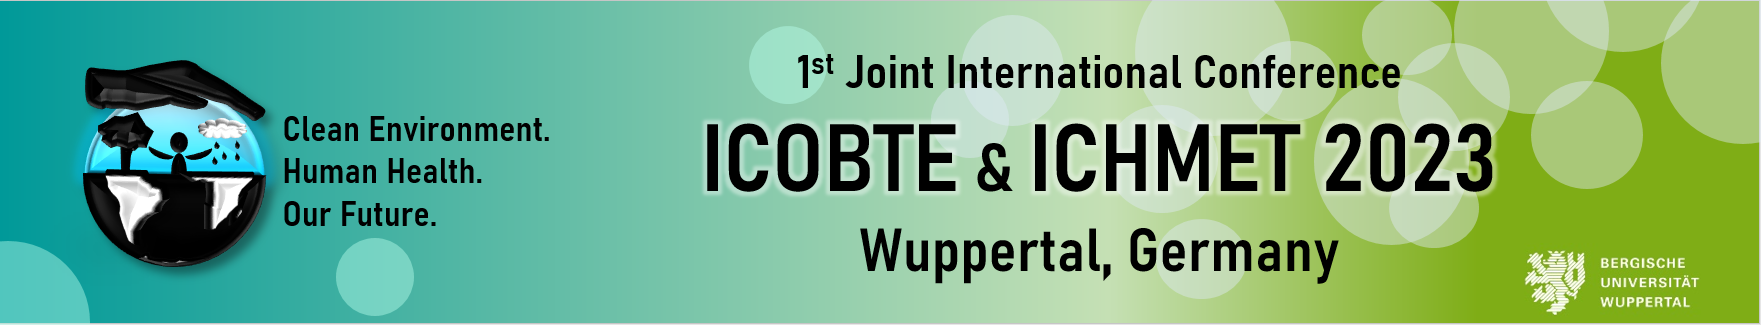 ICOBTE_ICHMET